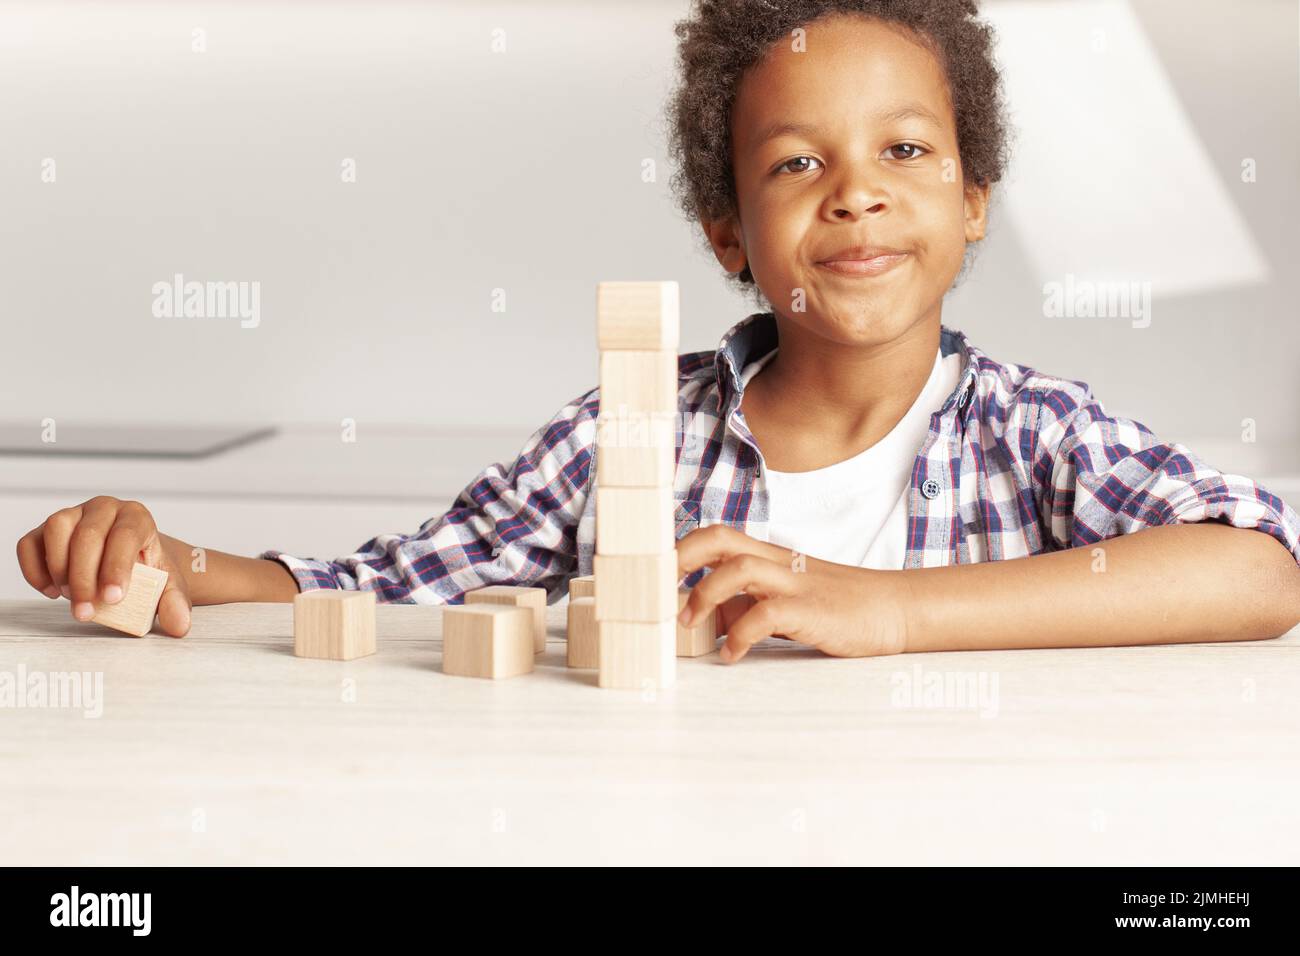 Sonriente niño afroamericano jugando en casa Foto de stock